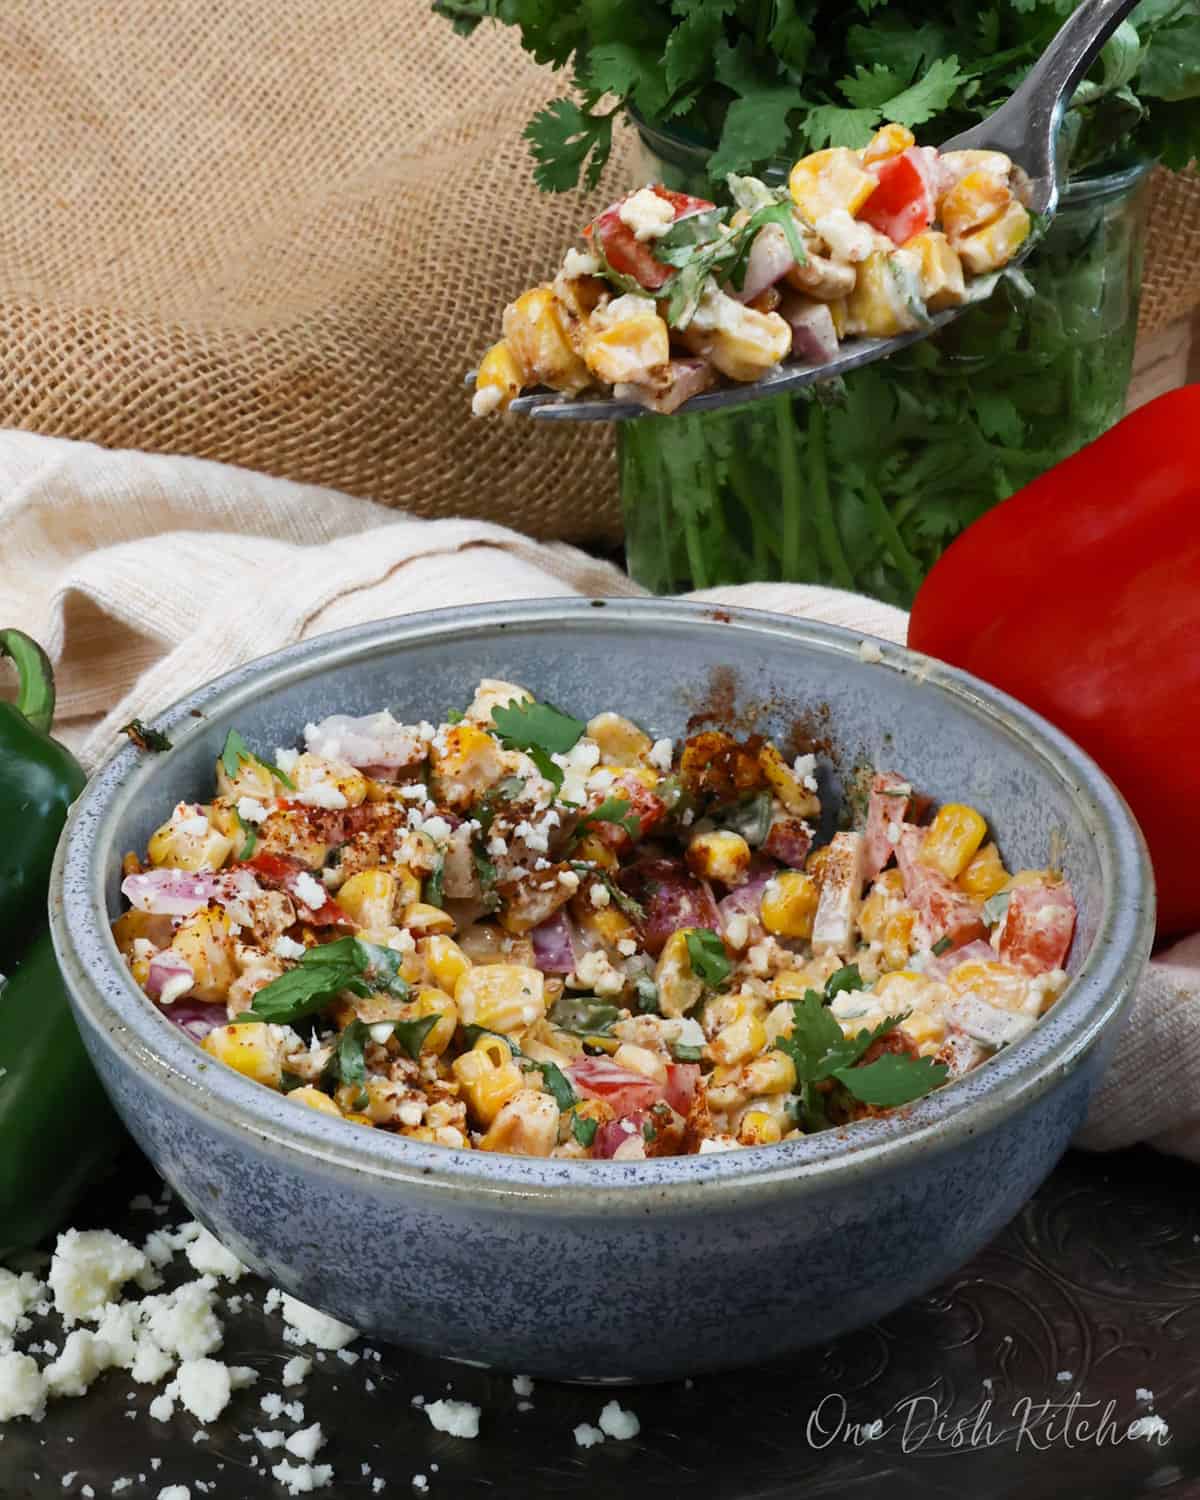 a partially eaten bowl of Mexican Street Corn Salad.